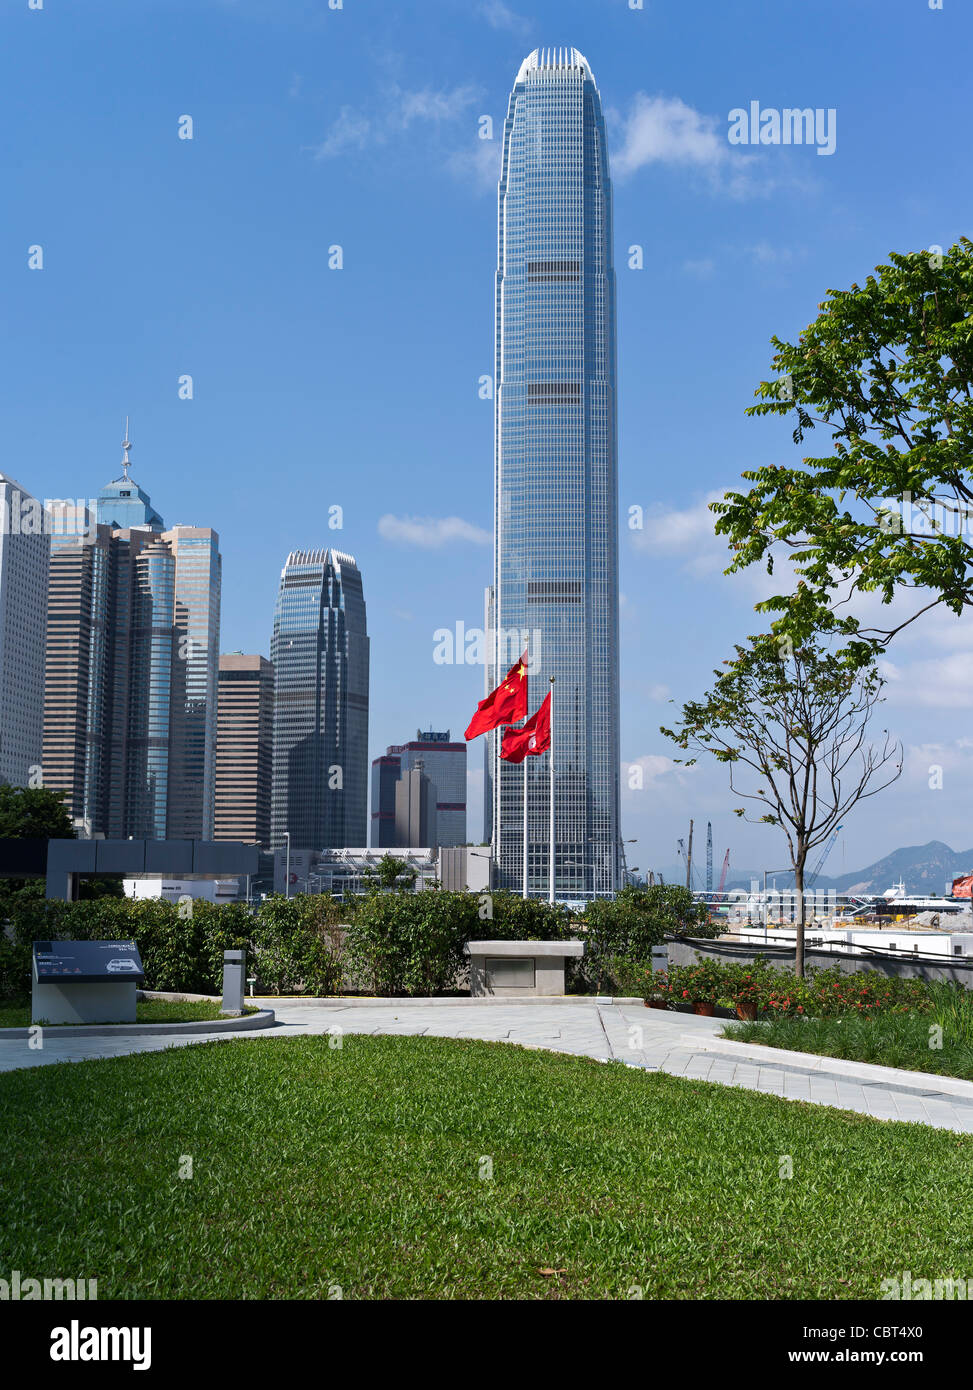 dh ADMIRALTY HONG KONG Tamar Park IFC 2 tour drapeau chinois et drapeaux de Hong Kong jardin Legco chine gratte-ciel paysage urbain central de jour Banque D'Images